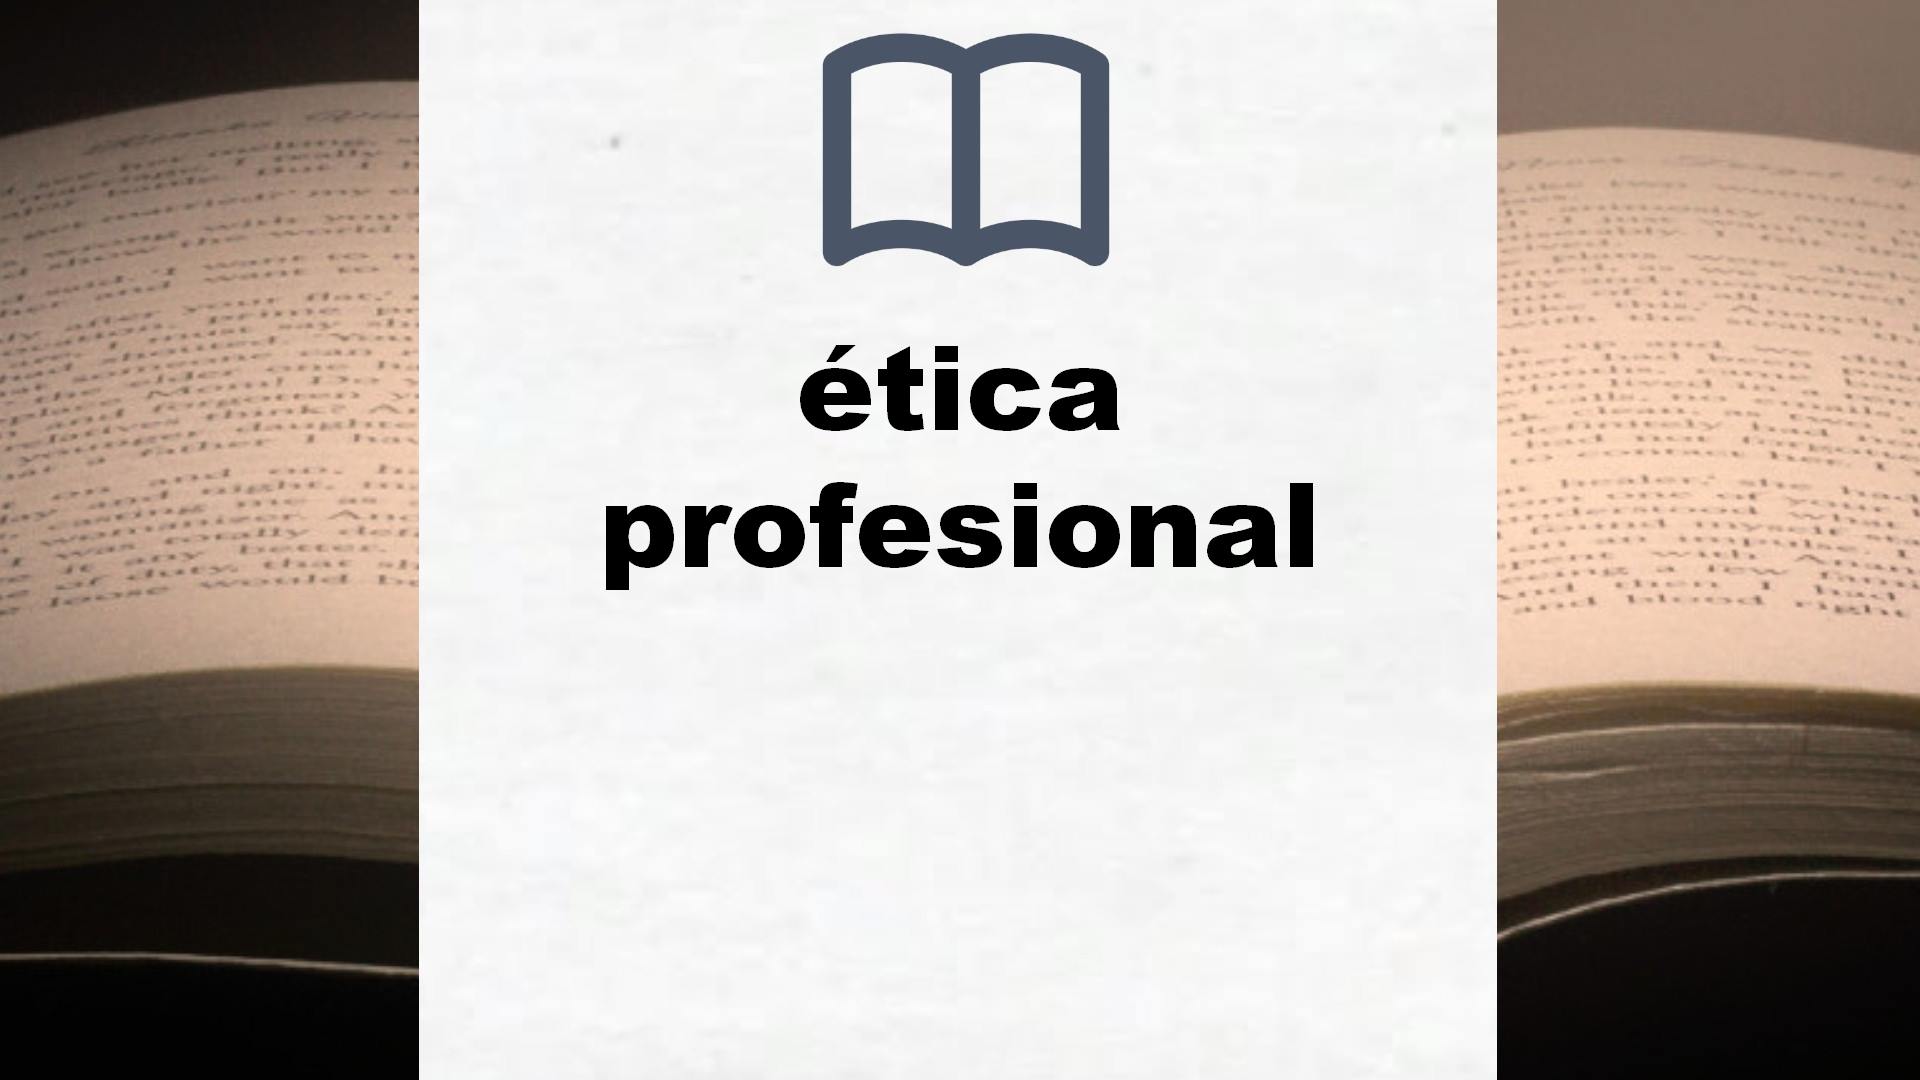 Libros sobre ética profesional